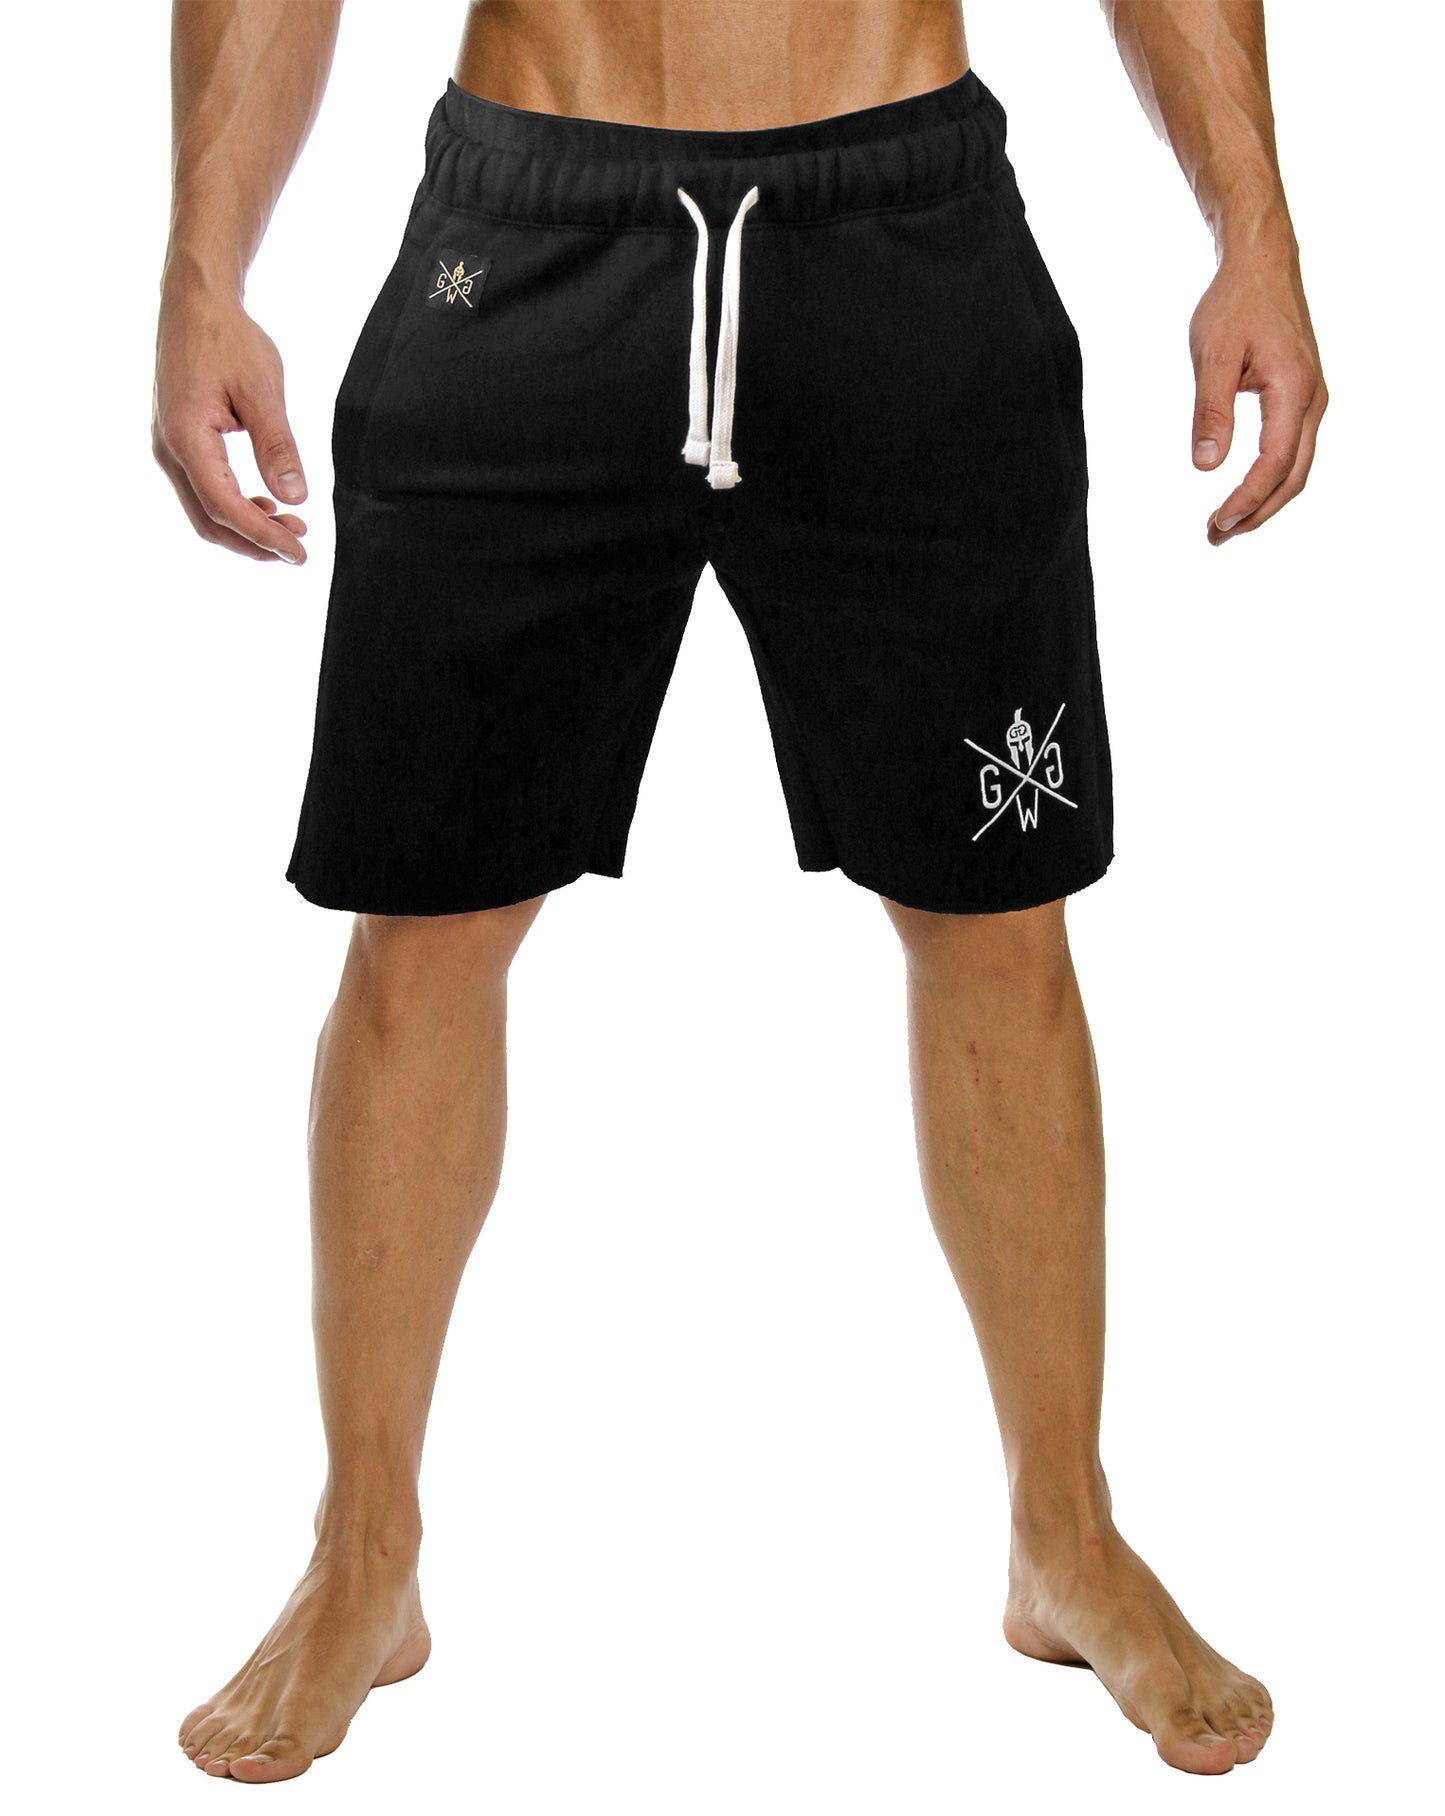 Modische und funktionale schwarze Sporthosen für Herren, mit abgeschnittenen Beinen und ausgefransten Säumen, von Gym Generation.